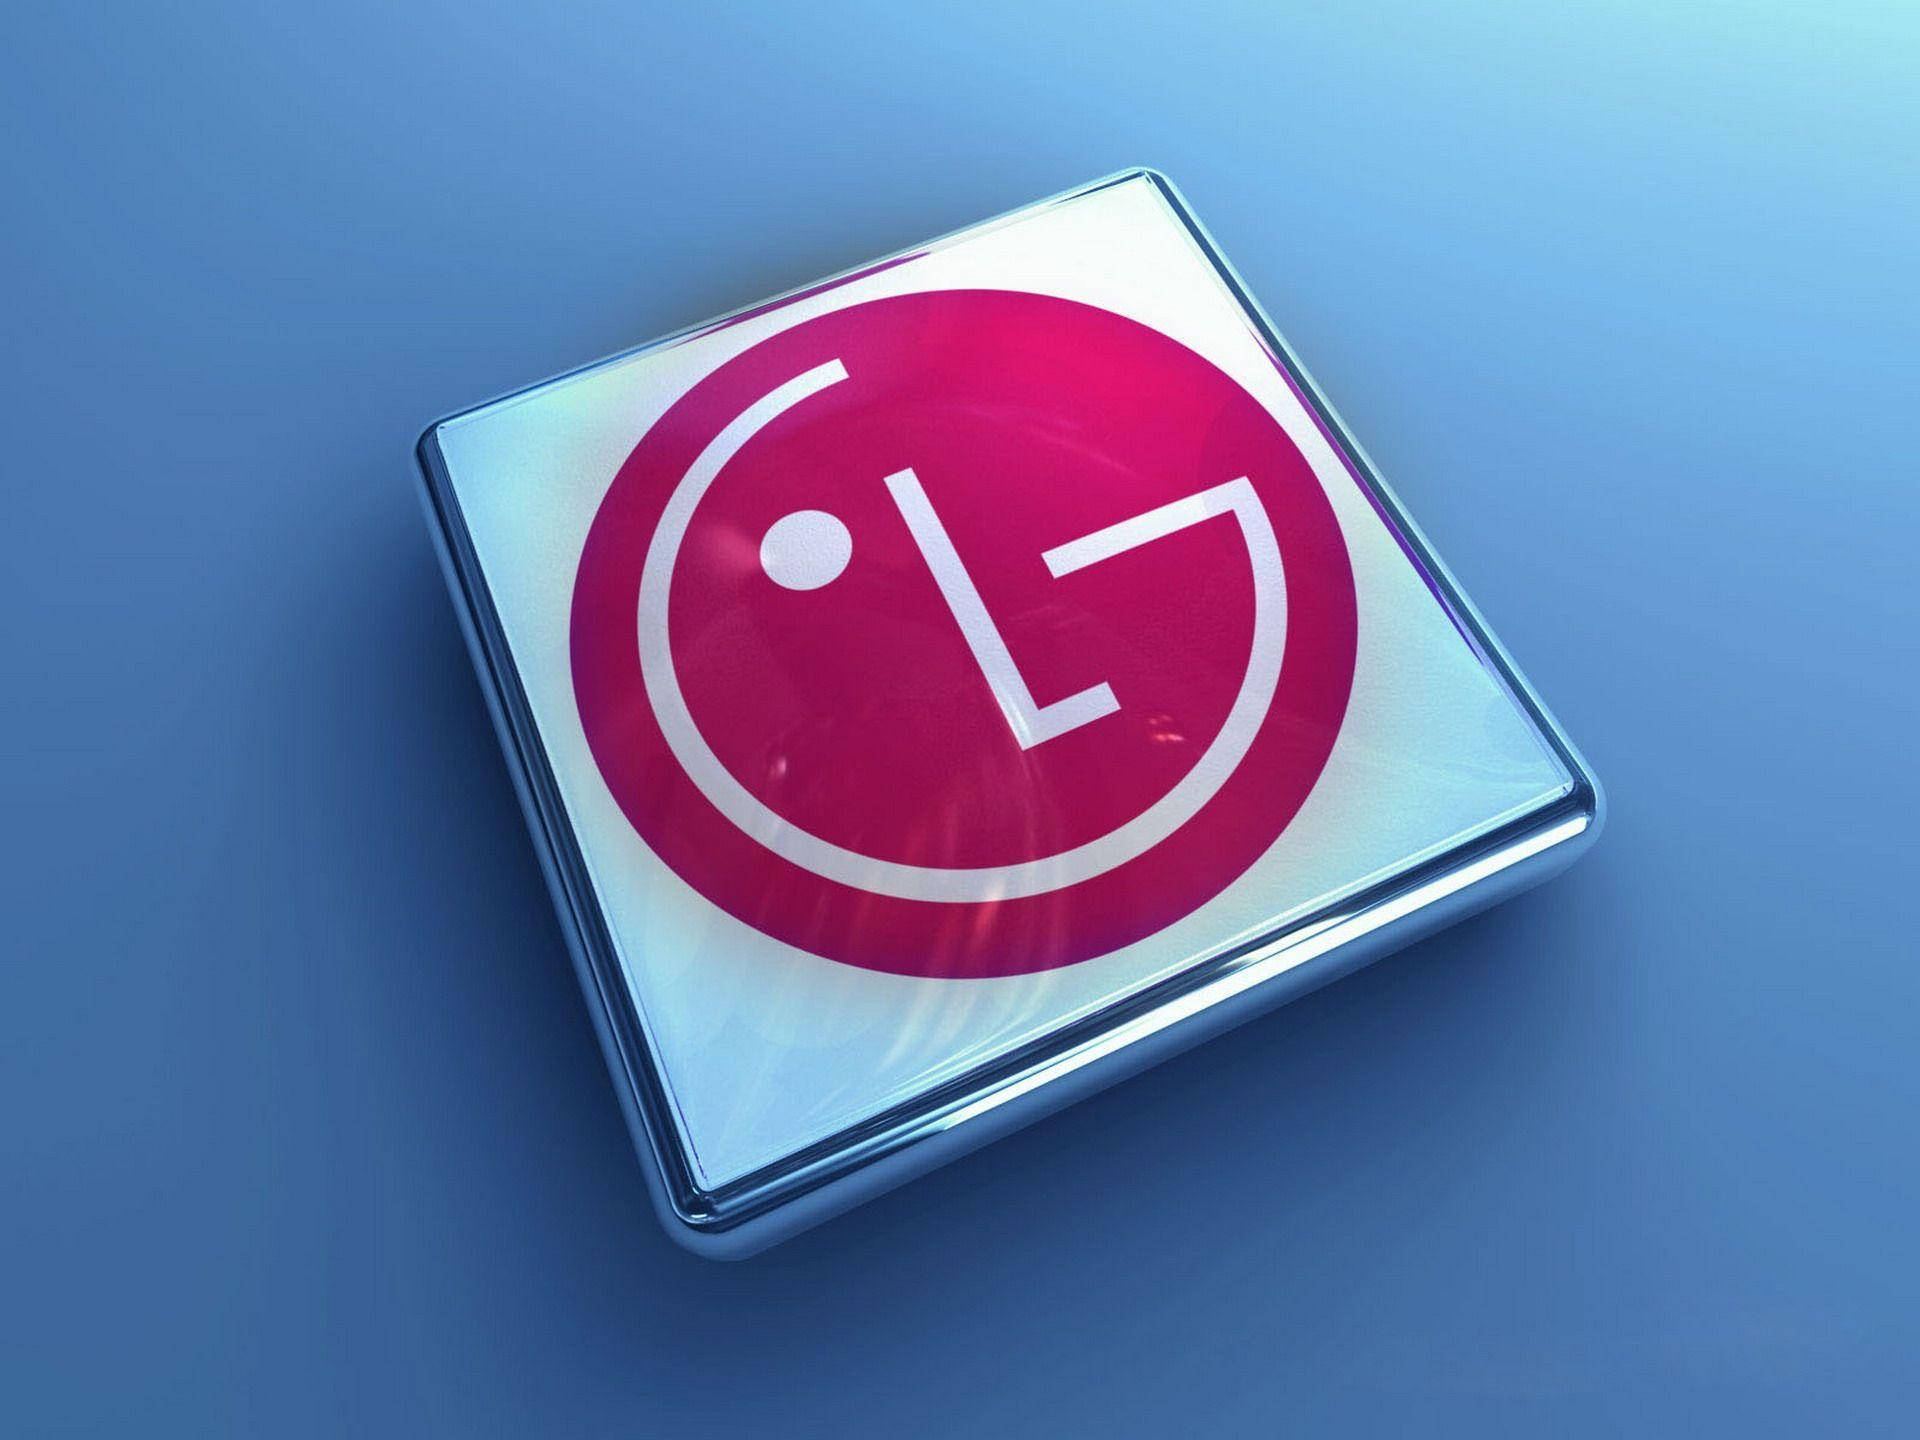 lg tv logo